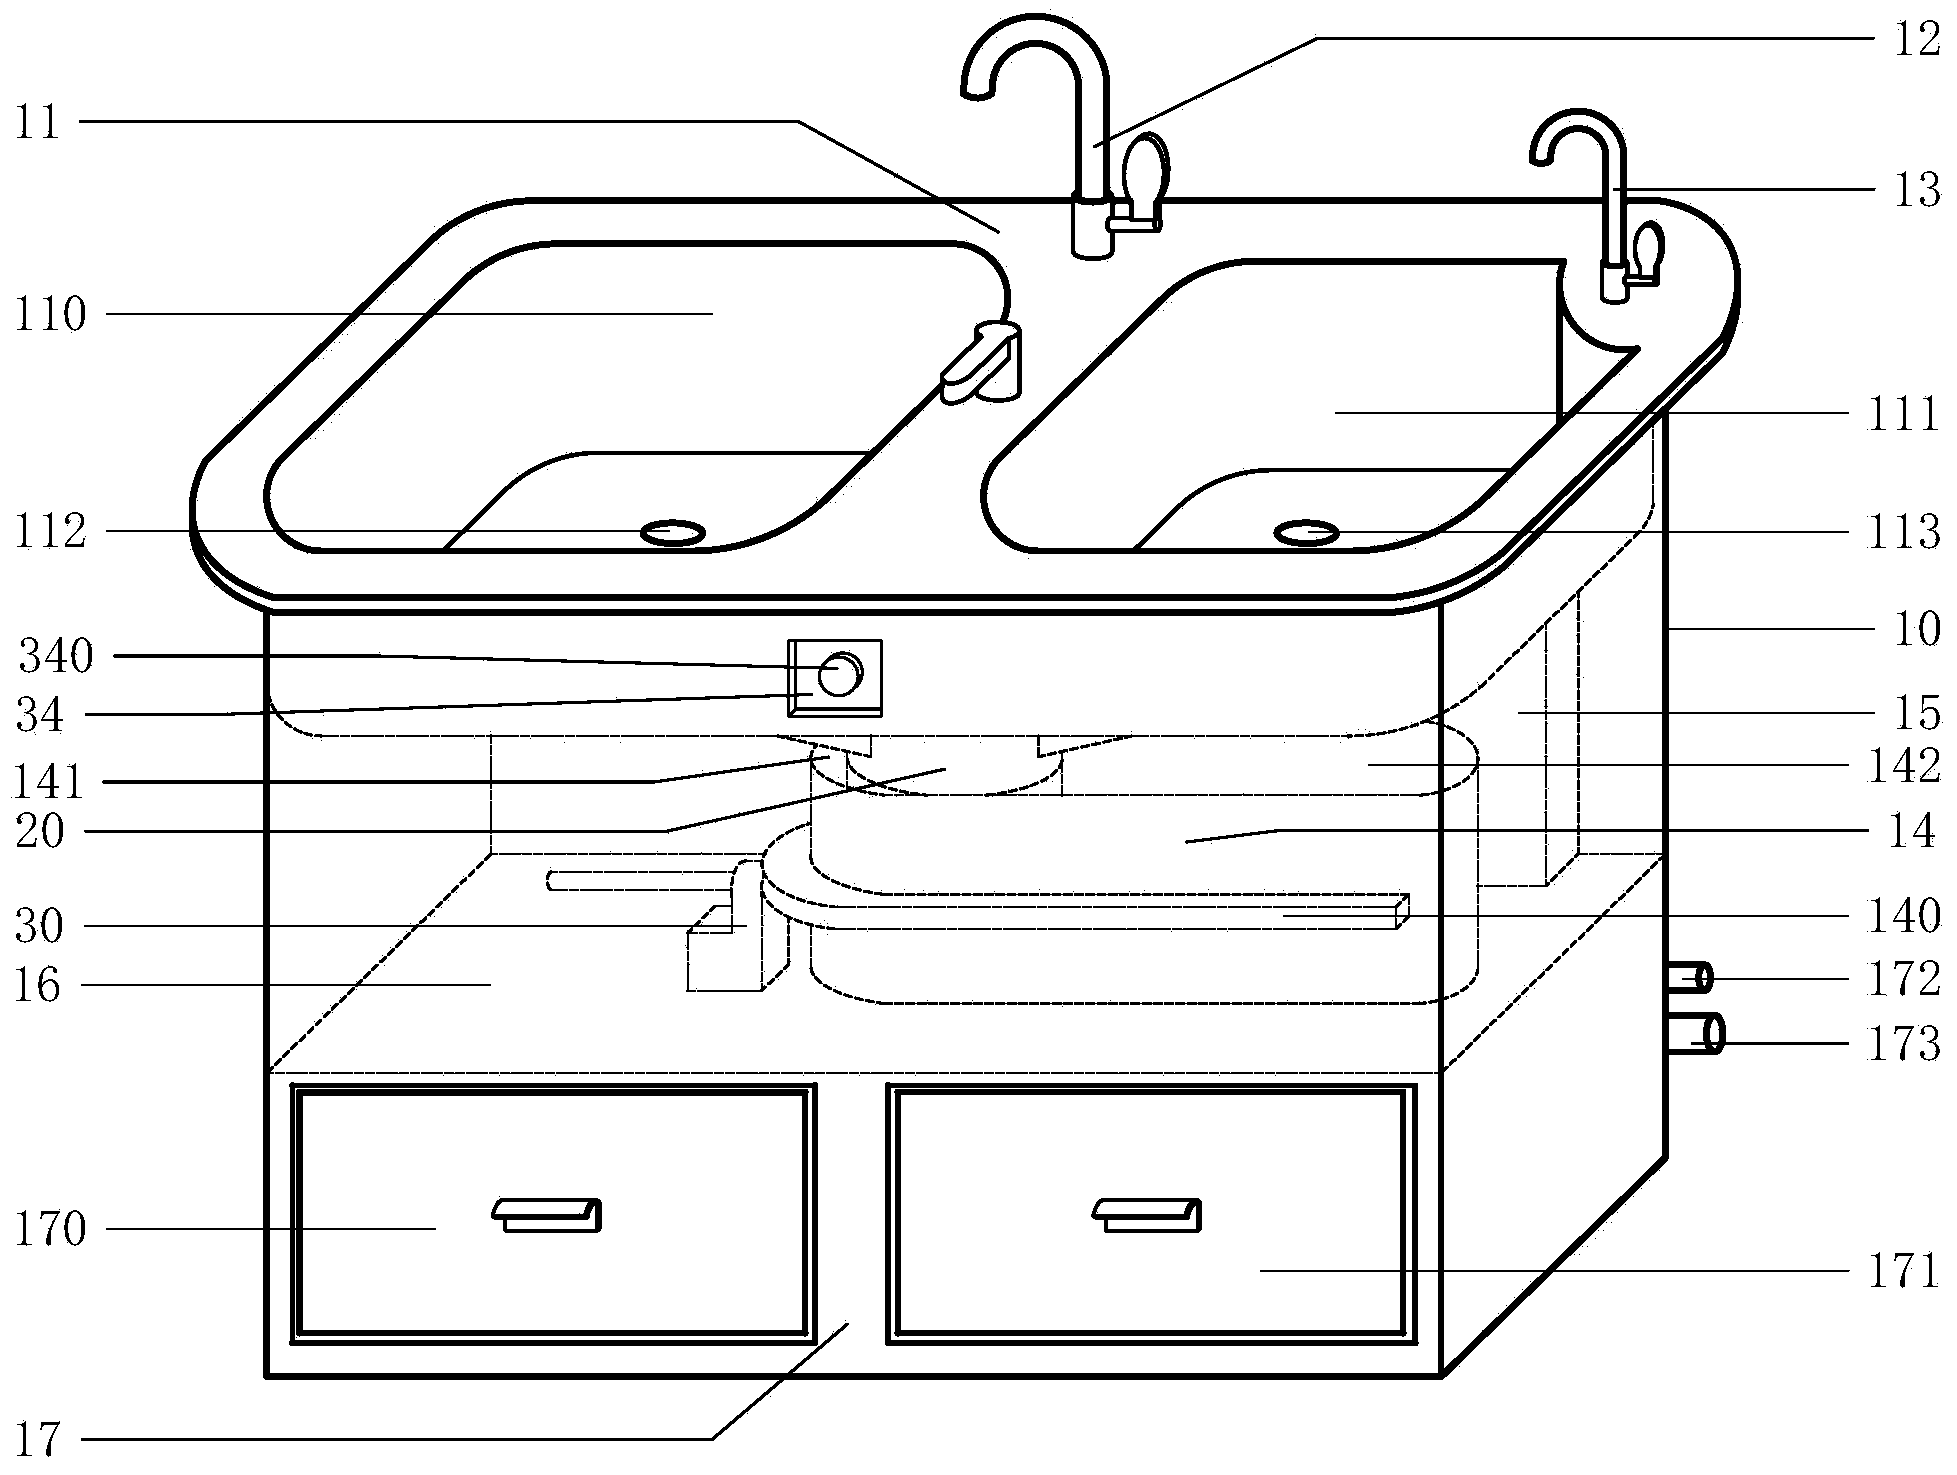 Cabinet-type kitchen sink